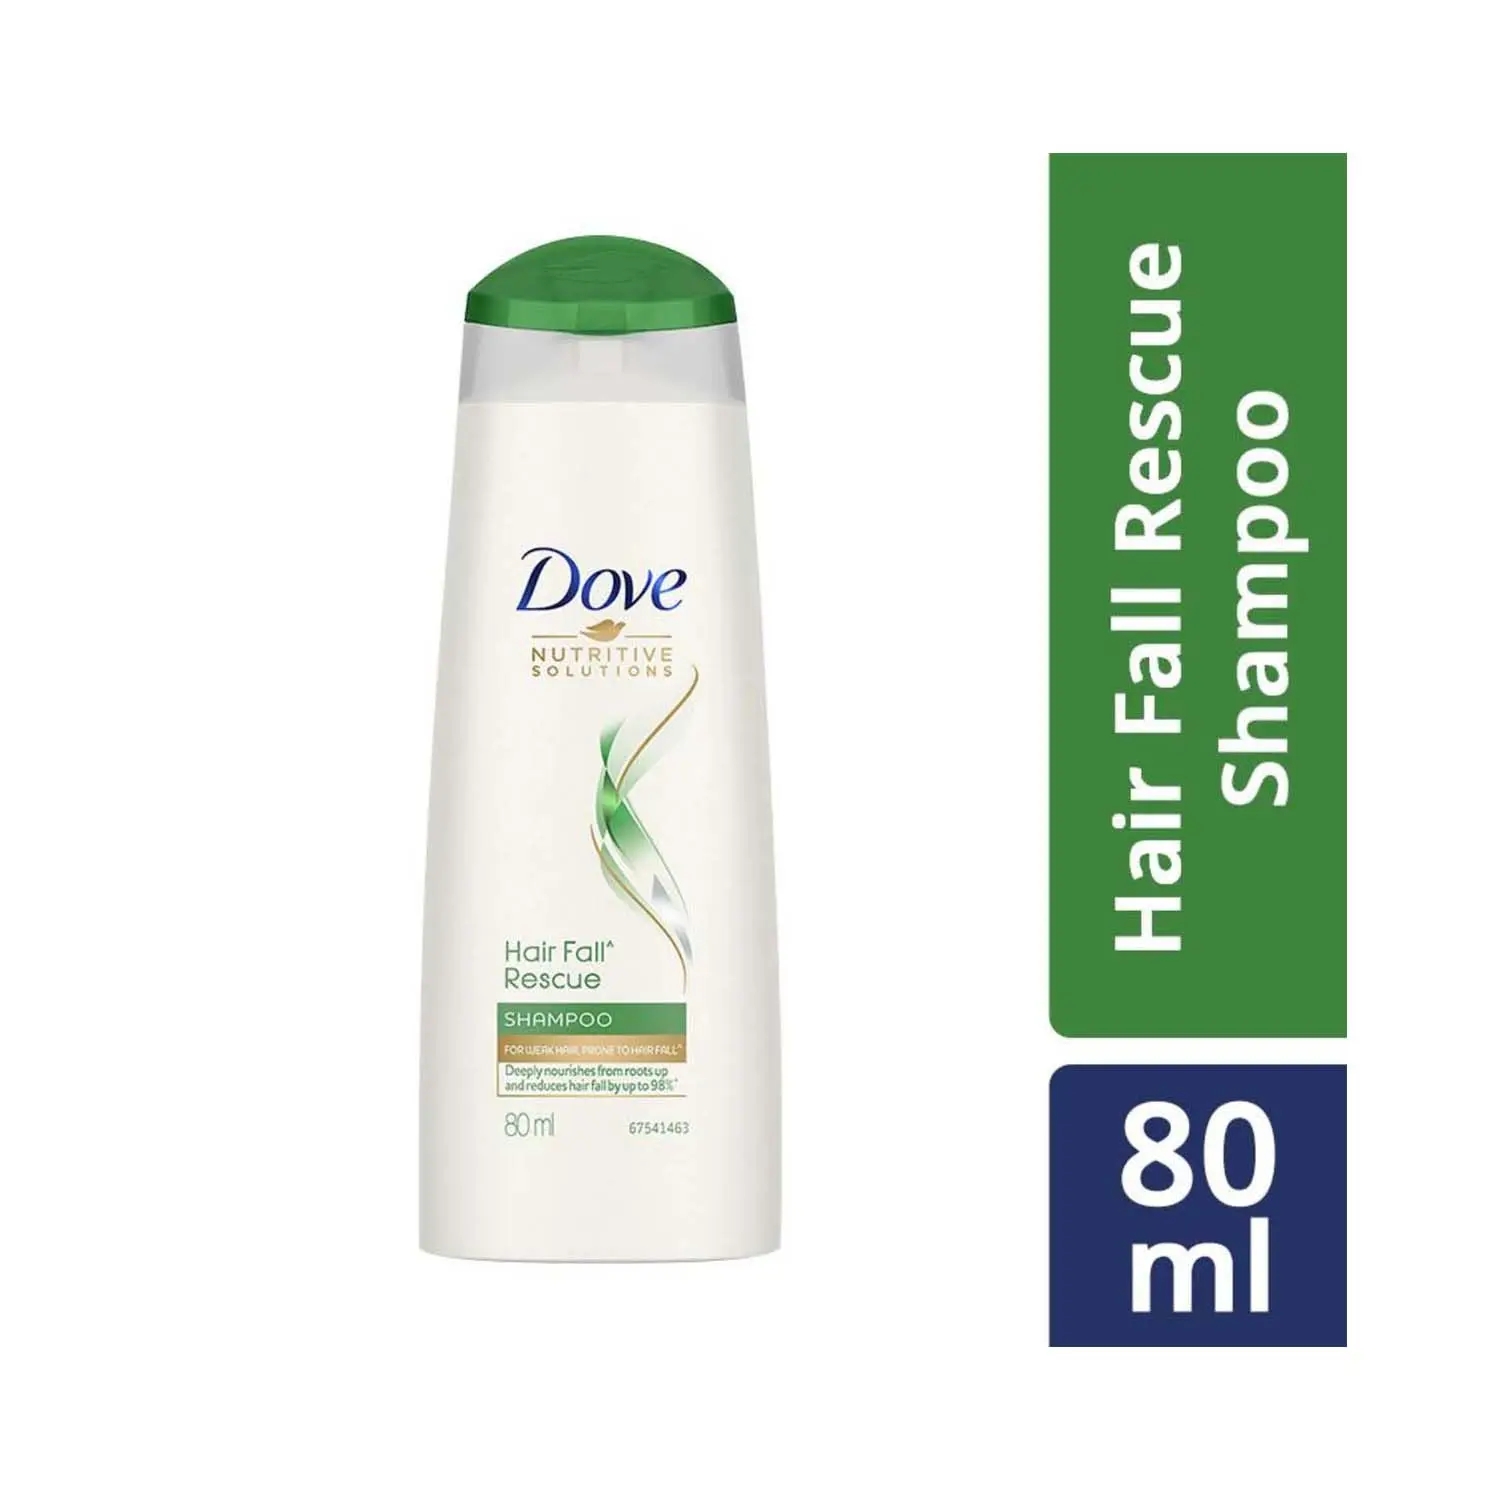 Dove | Dove Hair Fall Rescue Hair Shampoo (80ml)